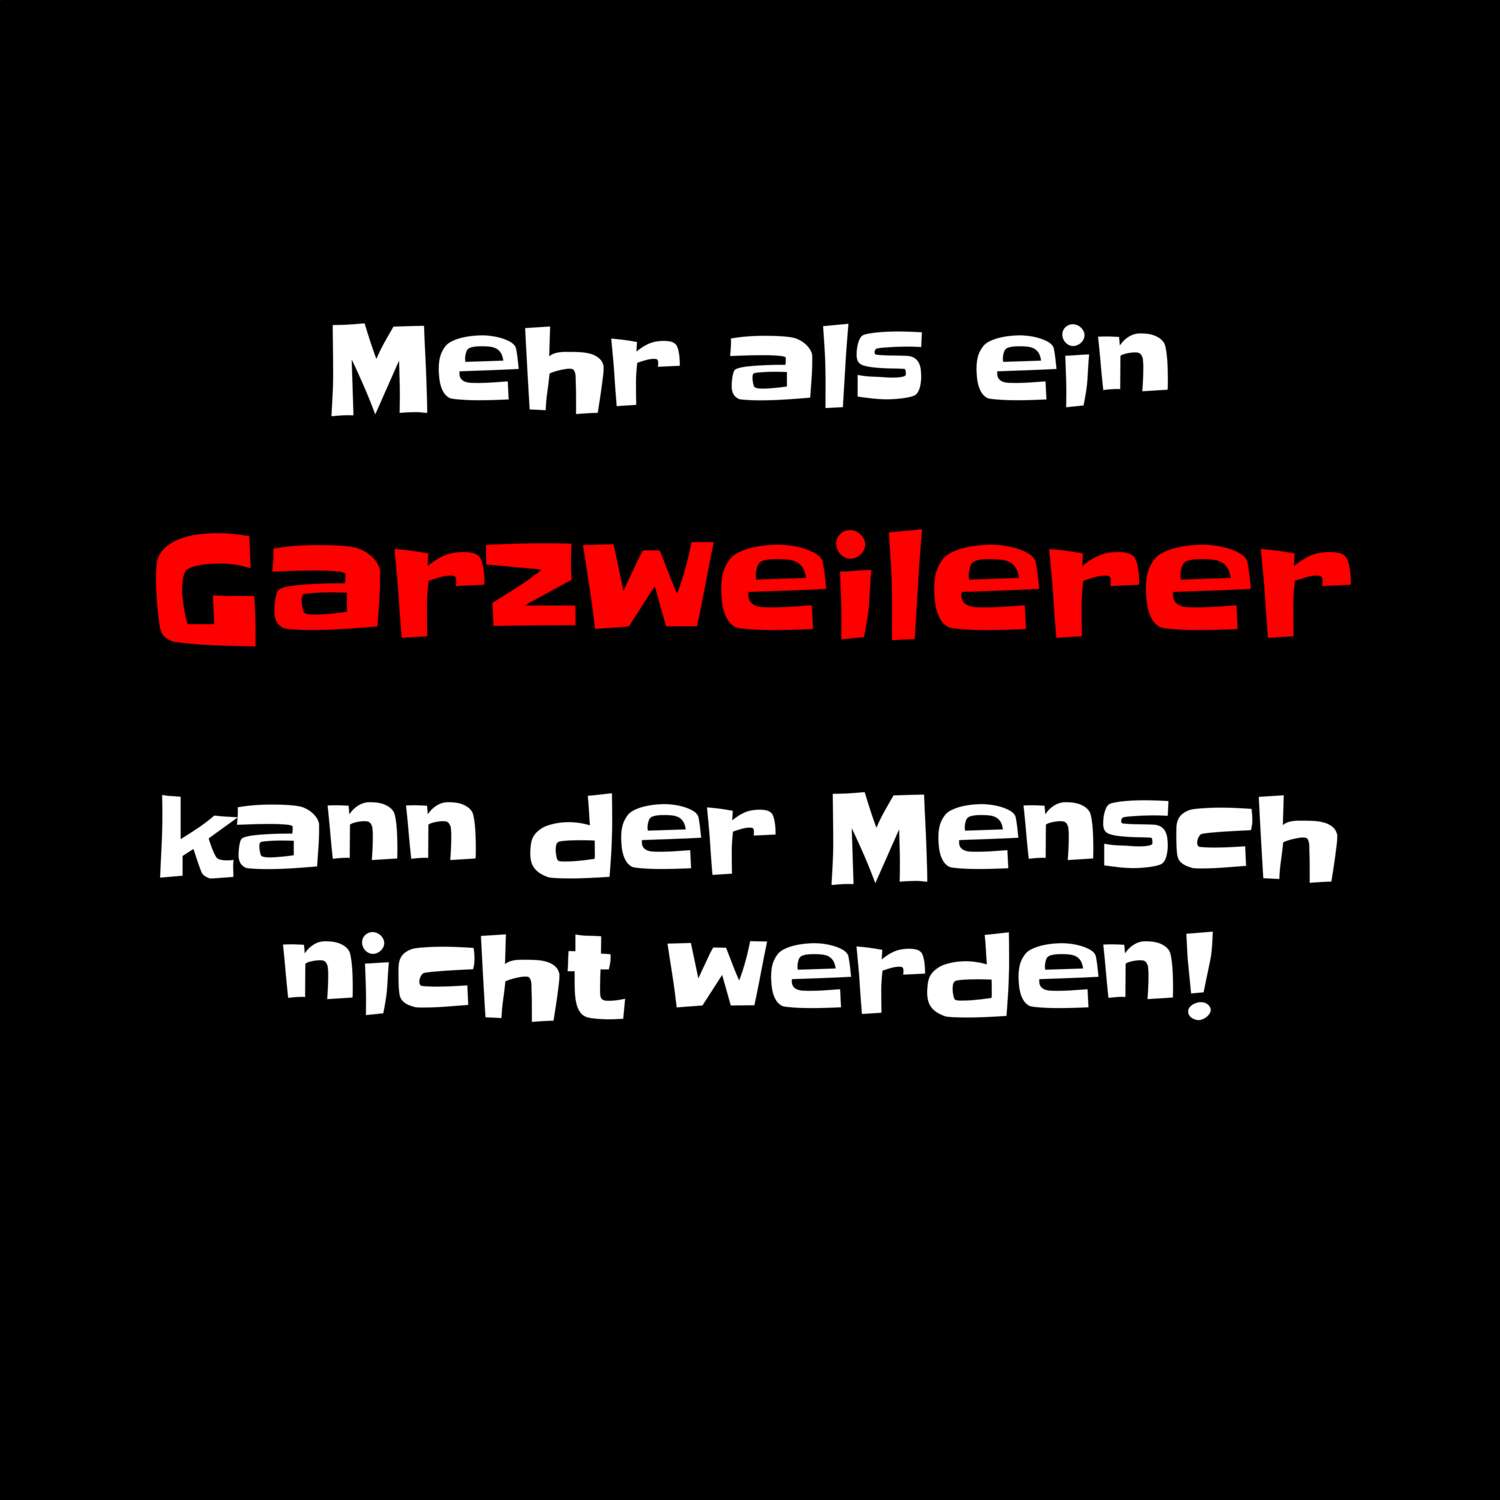 Garzweiler T-Shirt »Mehr als ein«